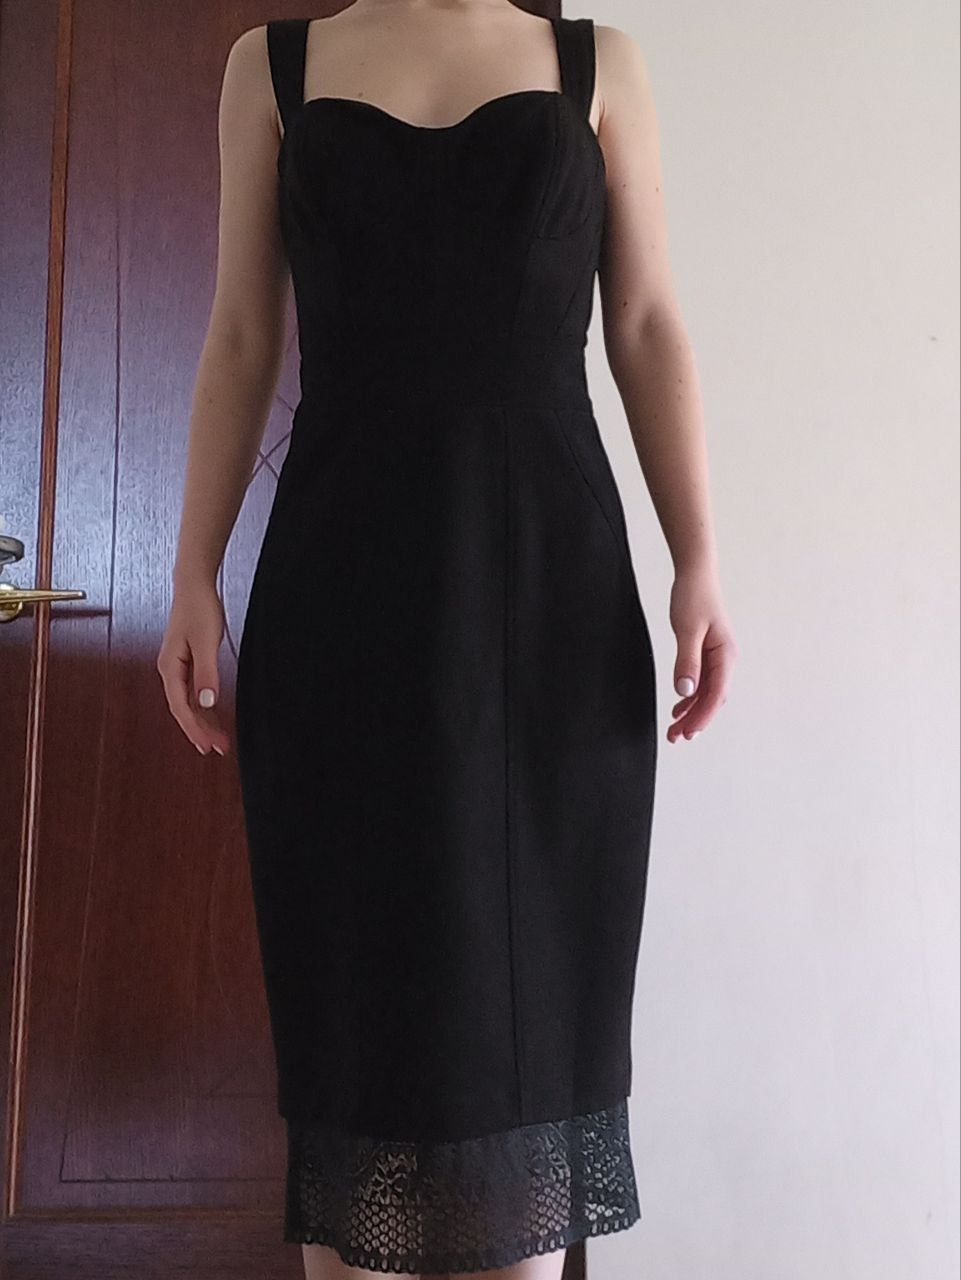 Продам елегантну сукню чорного кольору